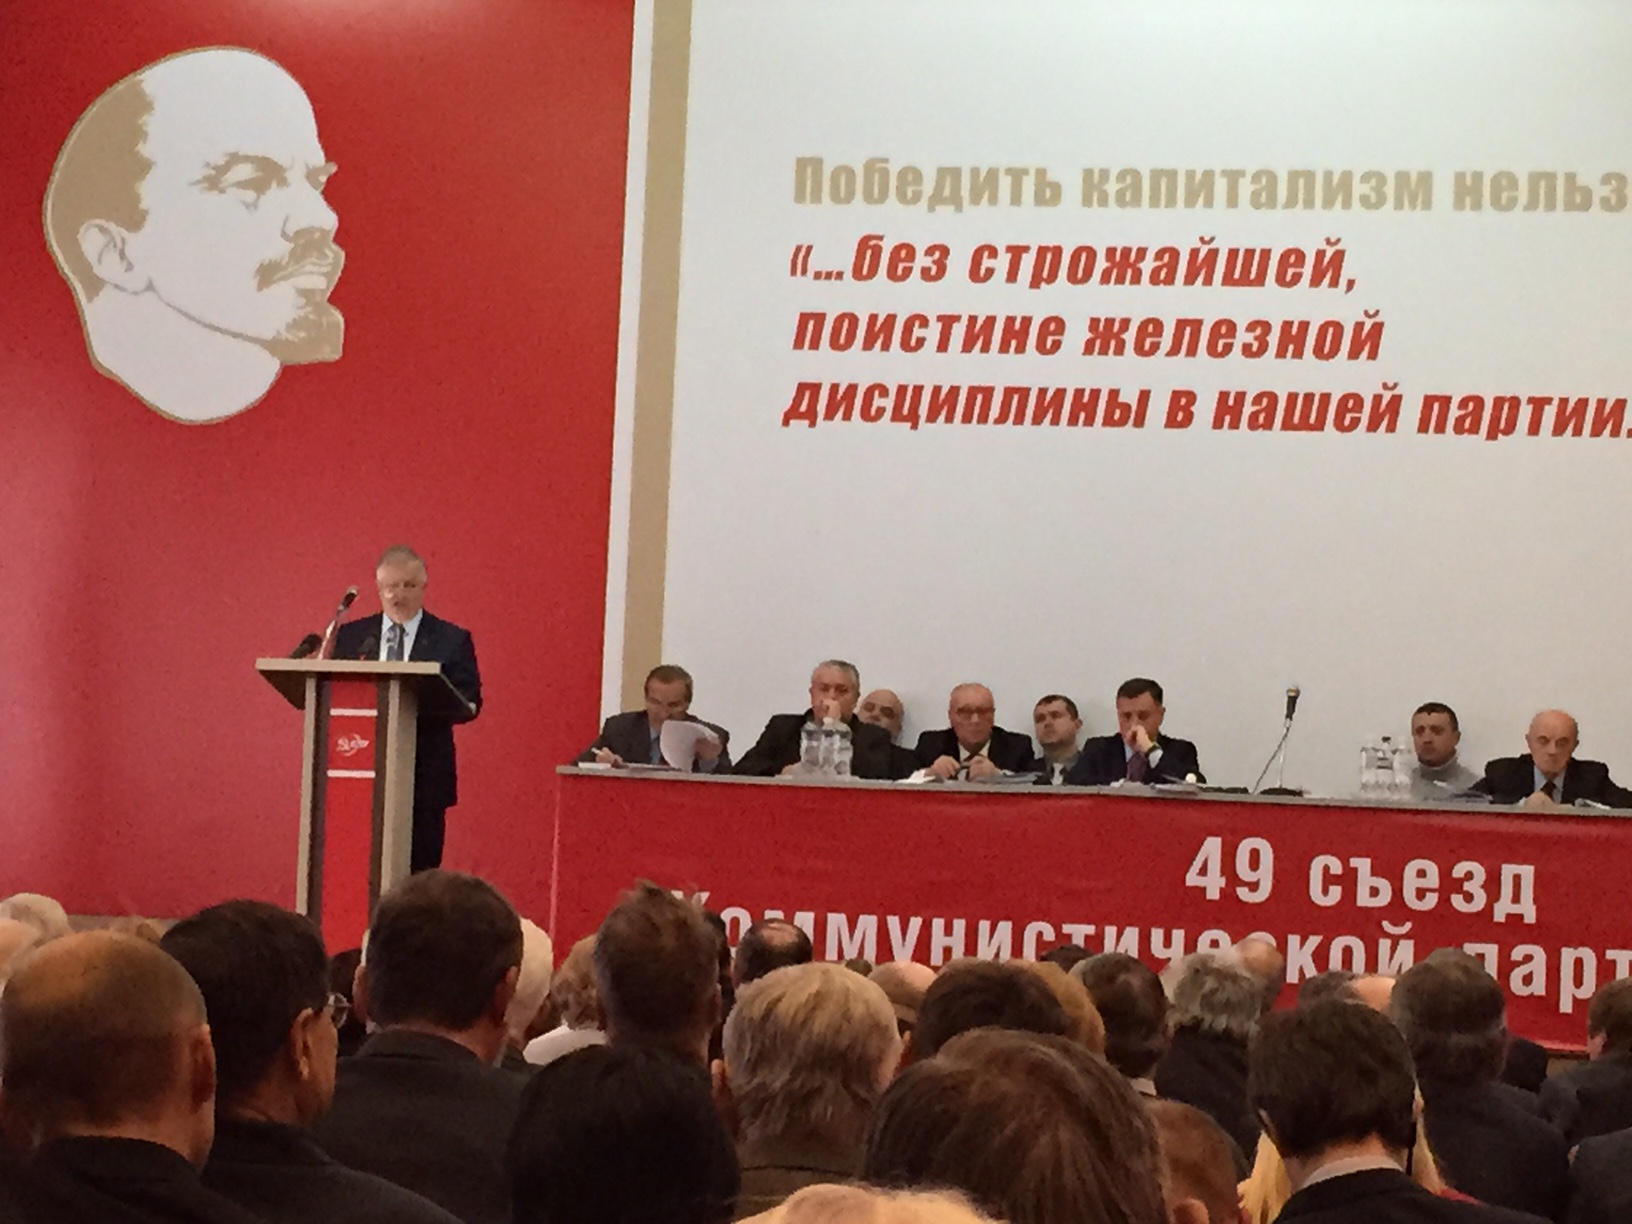 49ème congrès du Parti Communiste d'Ukraine (KPU), un congrès tourné pour assurer l'avenir du communisme en Ukraine